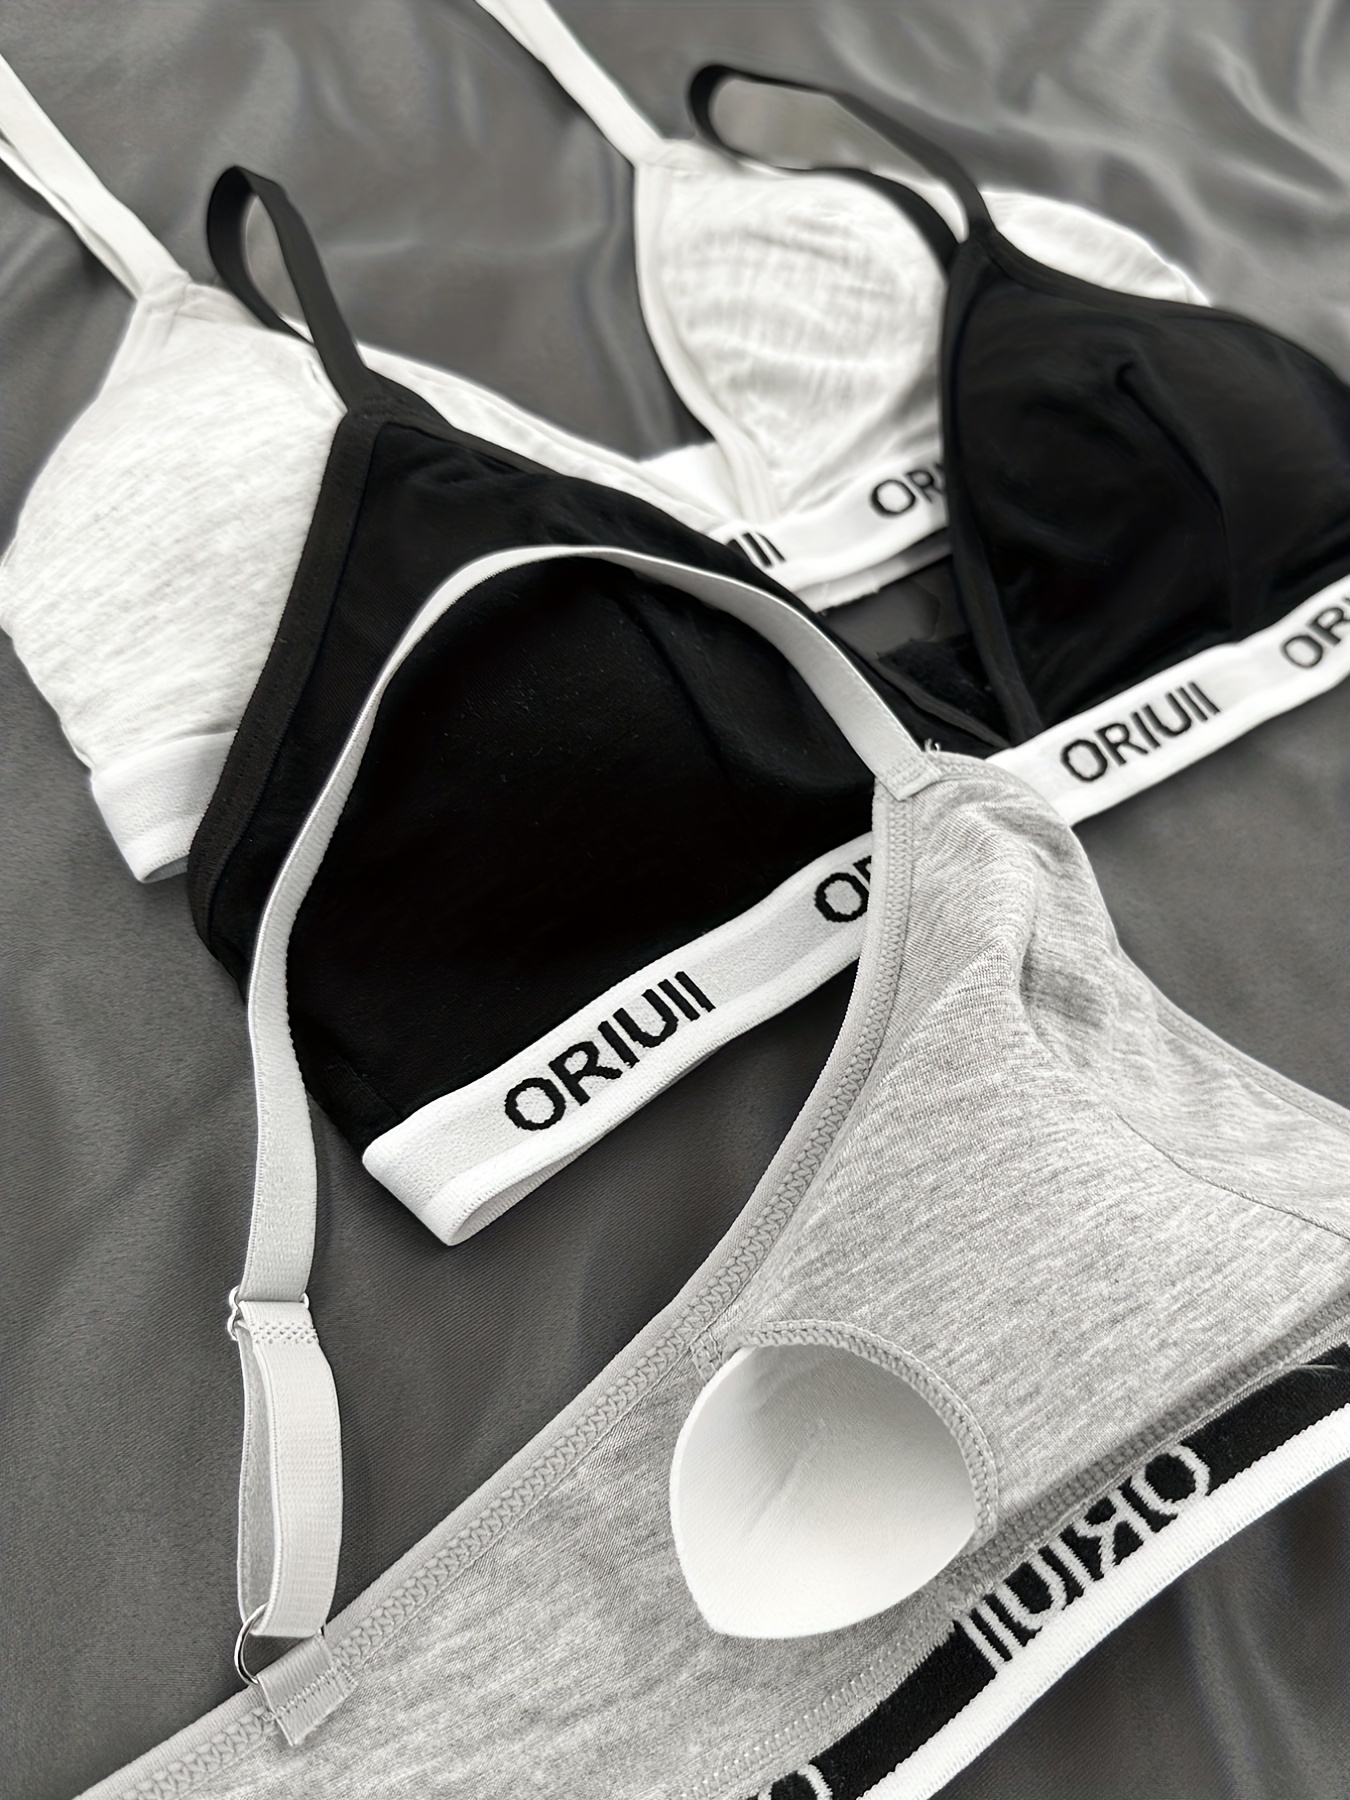 Tawop 42Ddd Bras for Plus Size Women Women'S Vest Yoga Comfortable Wireless  Underwear Sports Bras Women Sissy Panties 